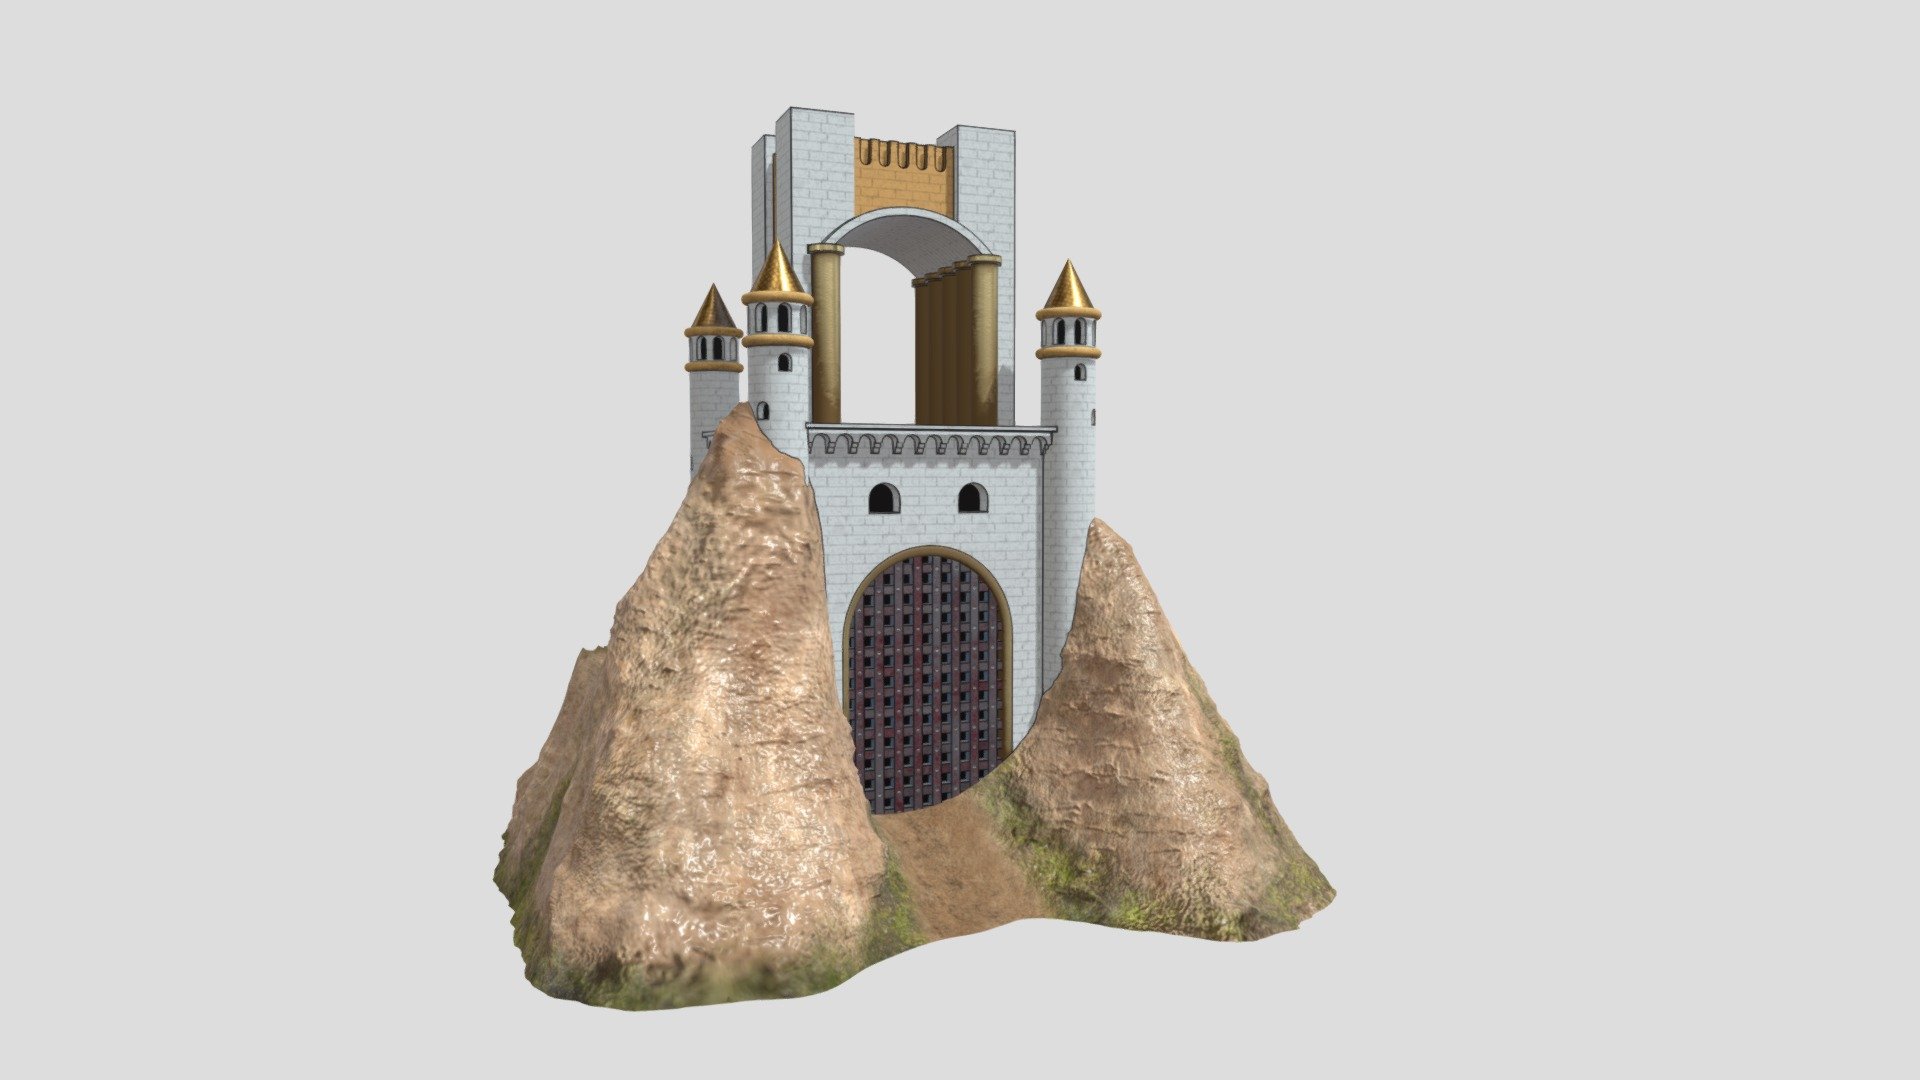 ArtStation - It takes two - Cardboard Castle